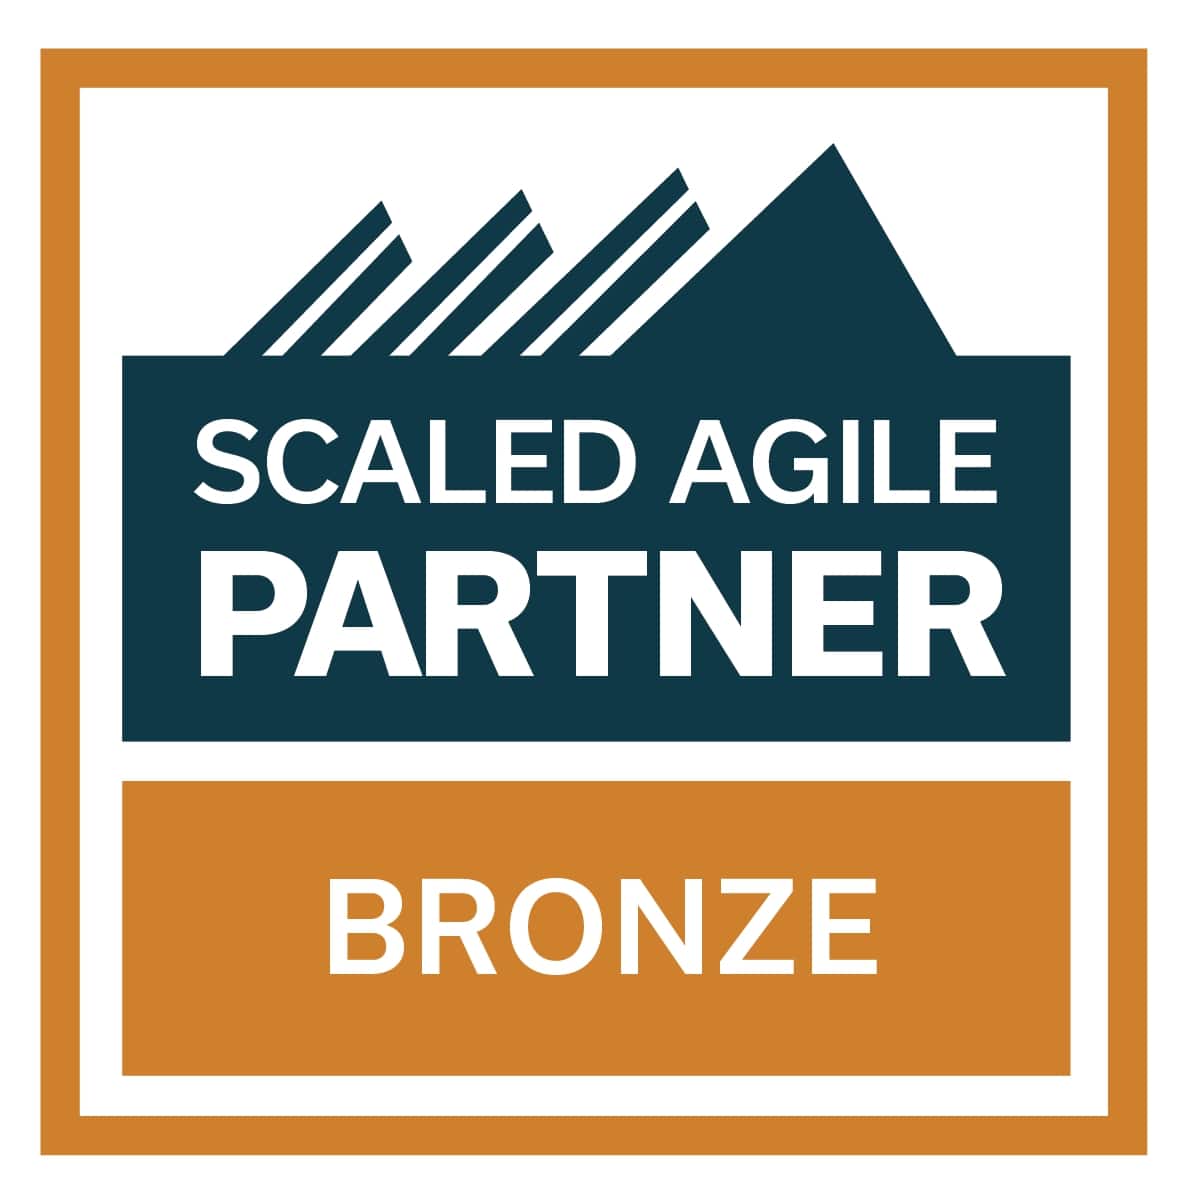 SAFe-Certification_Scaled-Agile-Partner